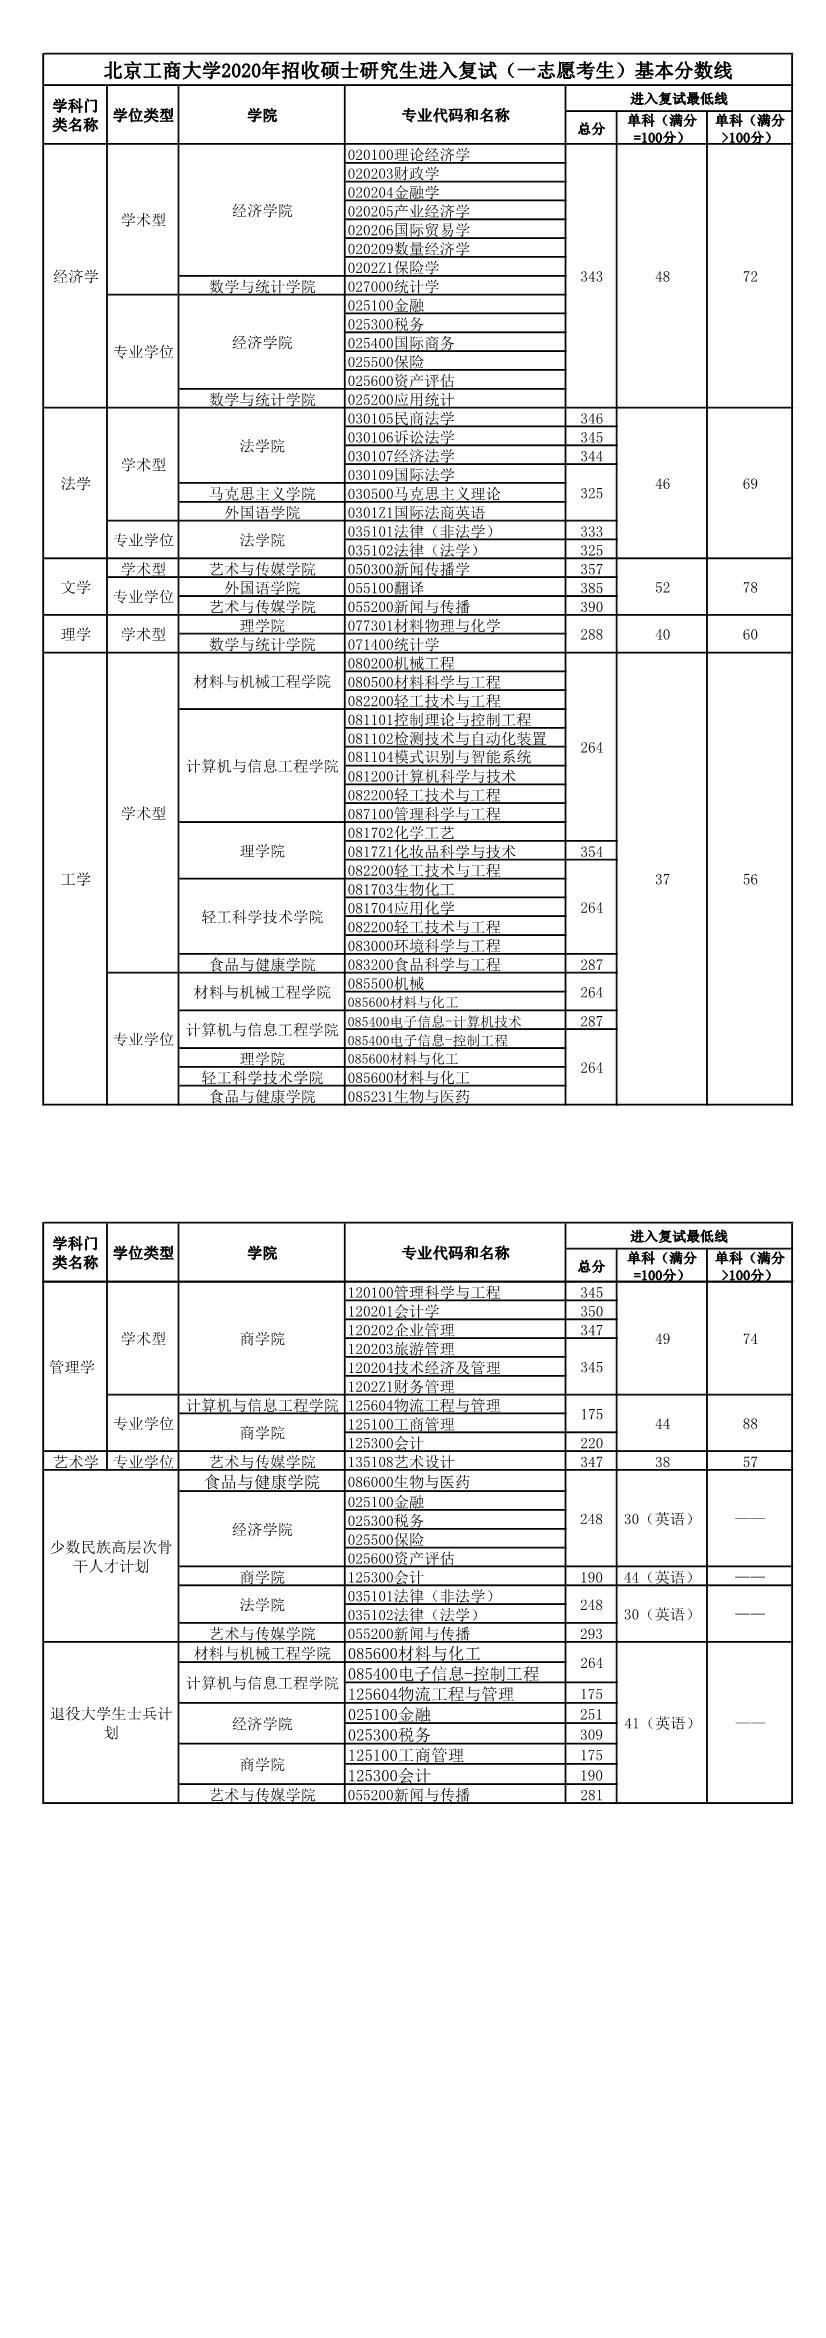 北京工商大学2020年考研复试分数线.jpg